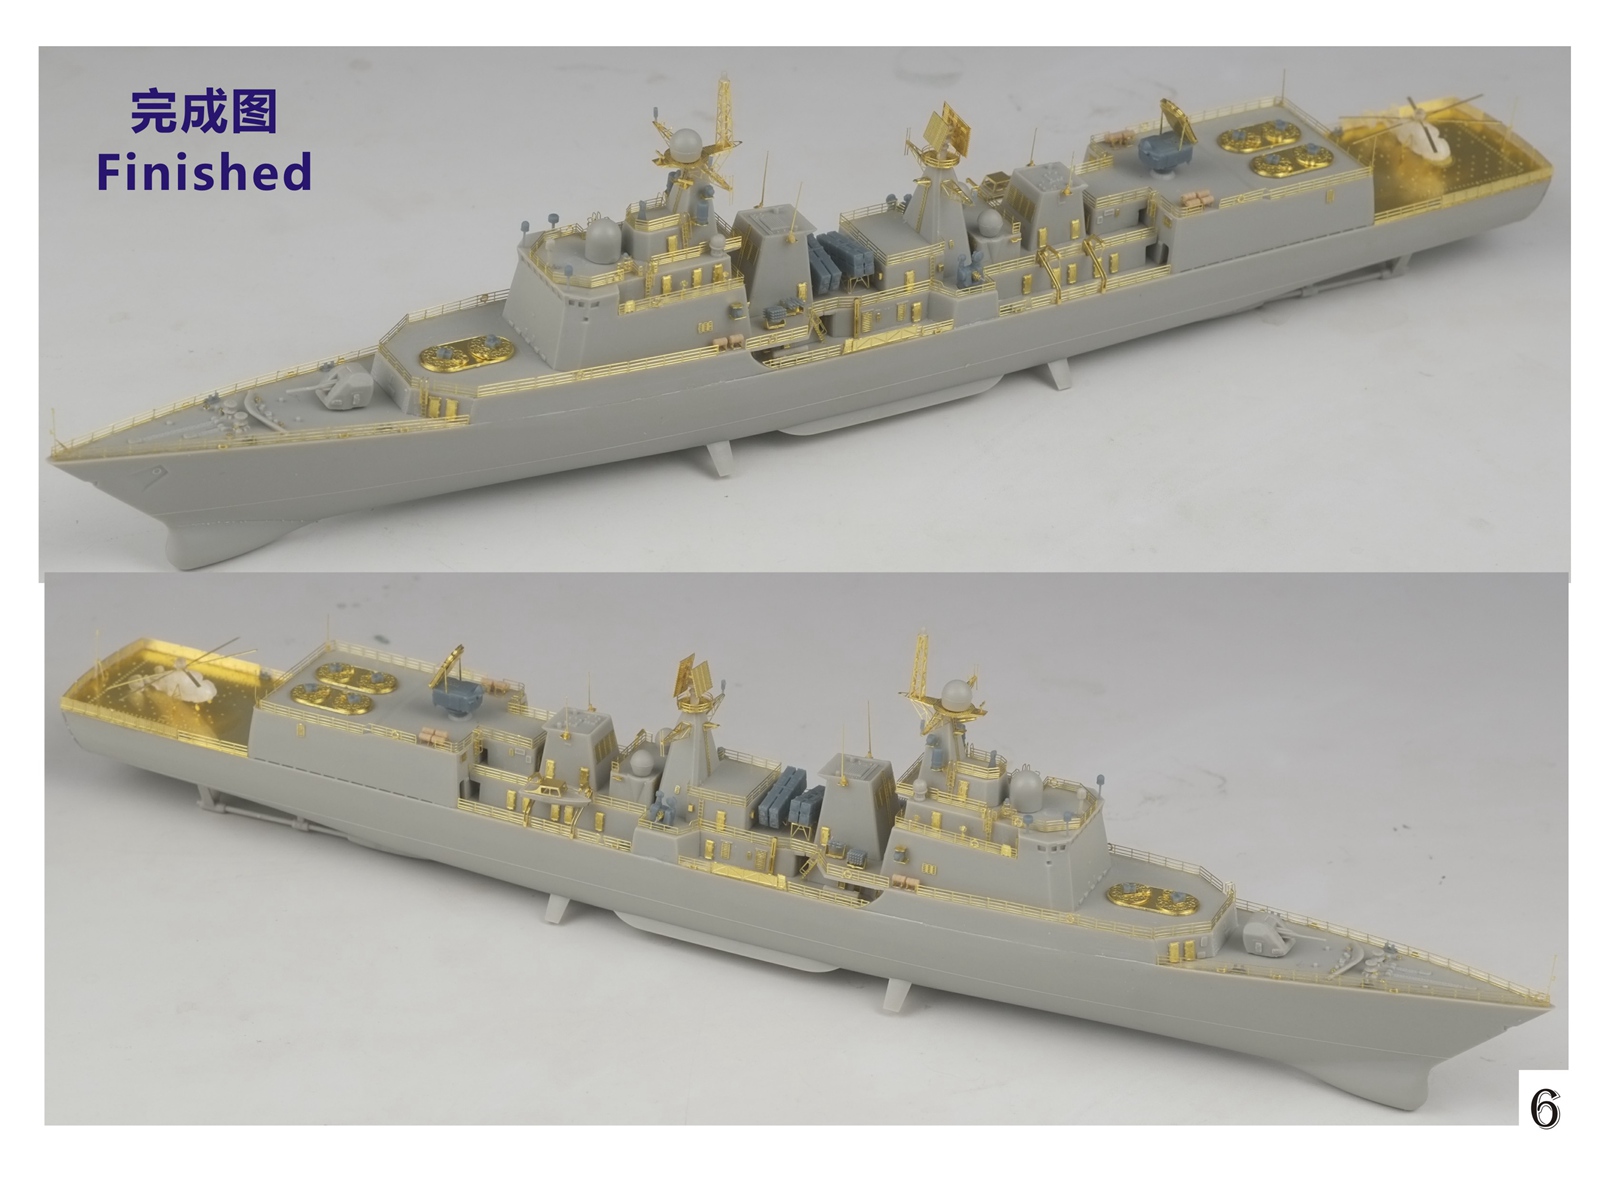 1/700 现代中国海军051C型驱逐舰升级改造套件(配小号手06731)